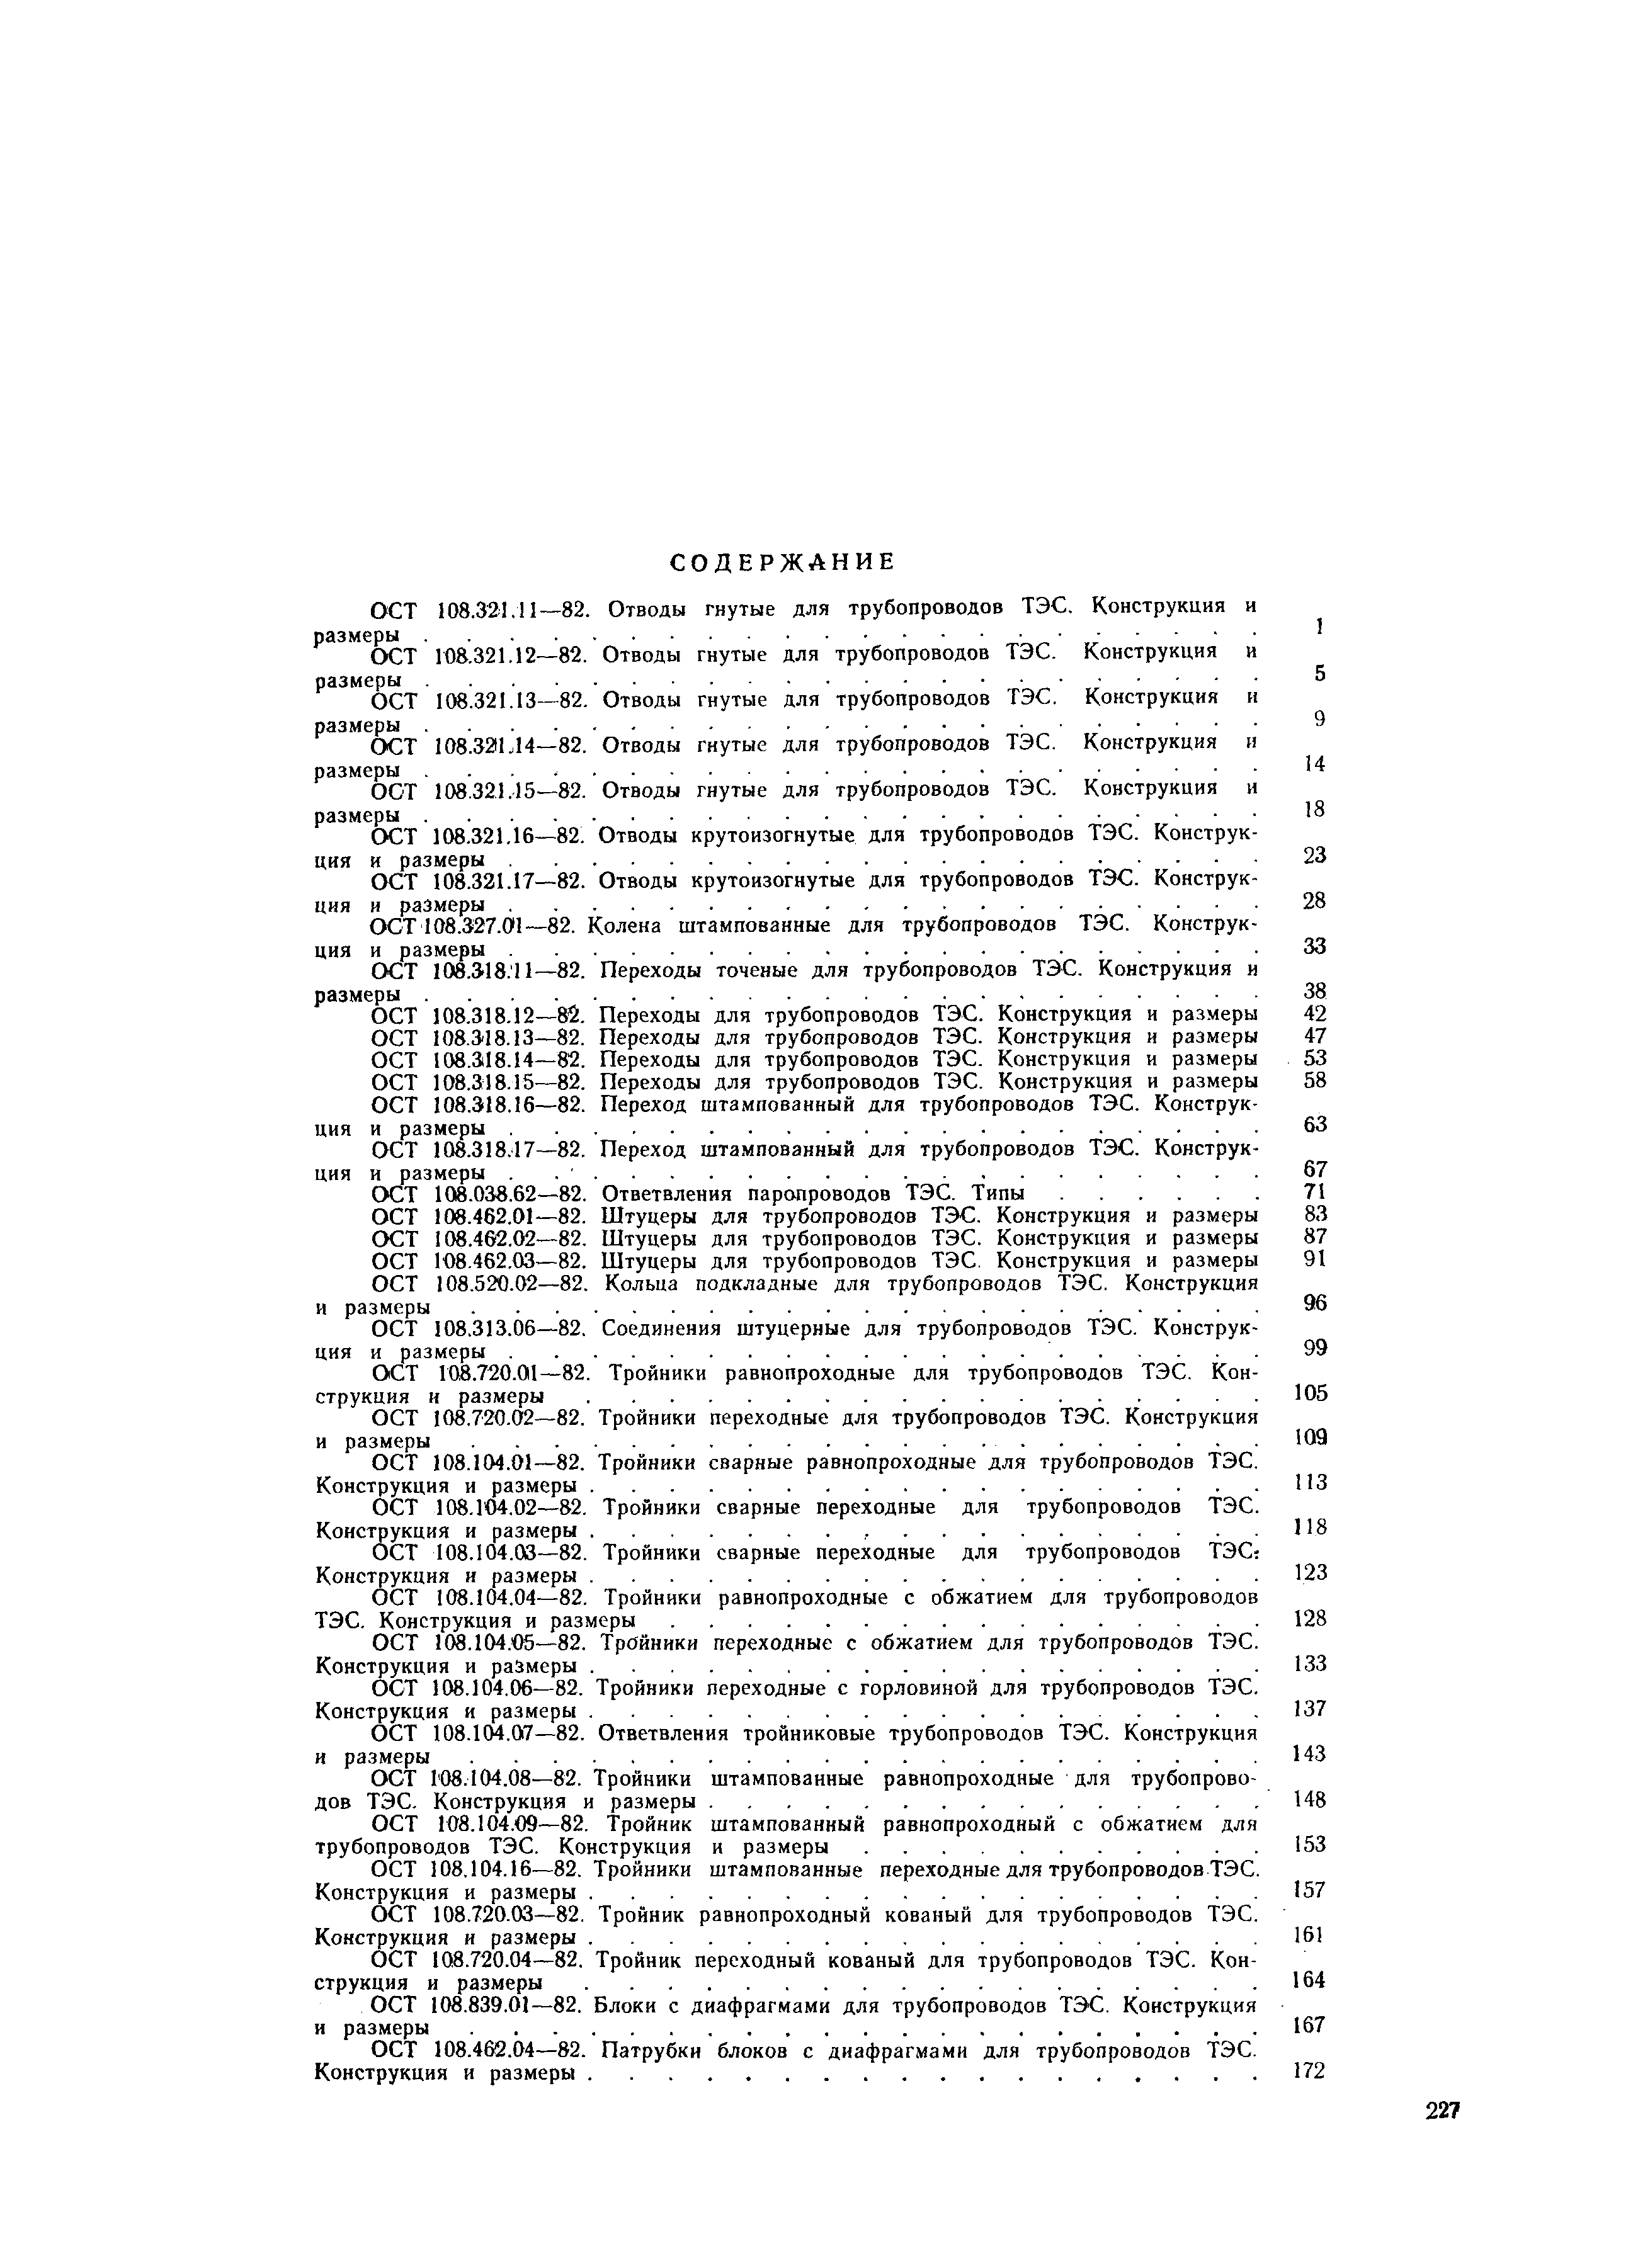 ОСТ 108.462.04-82